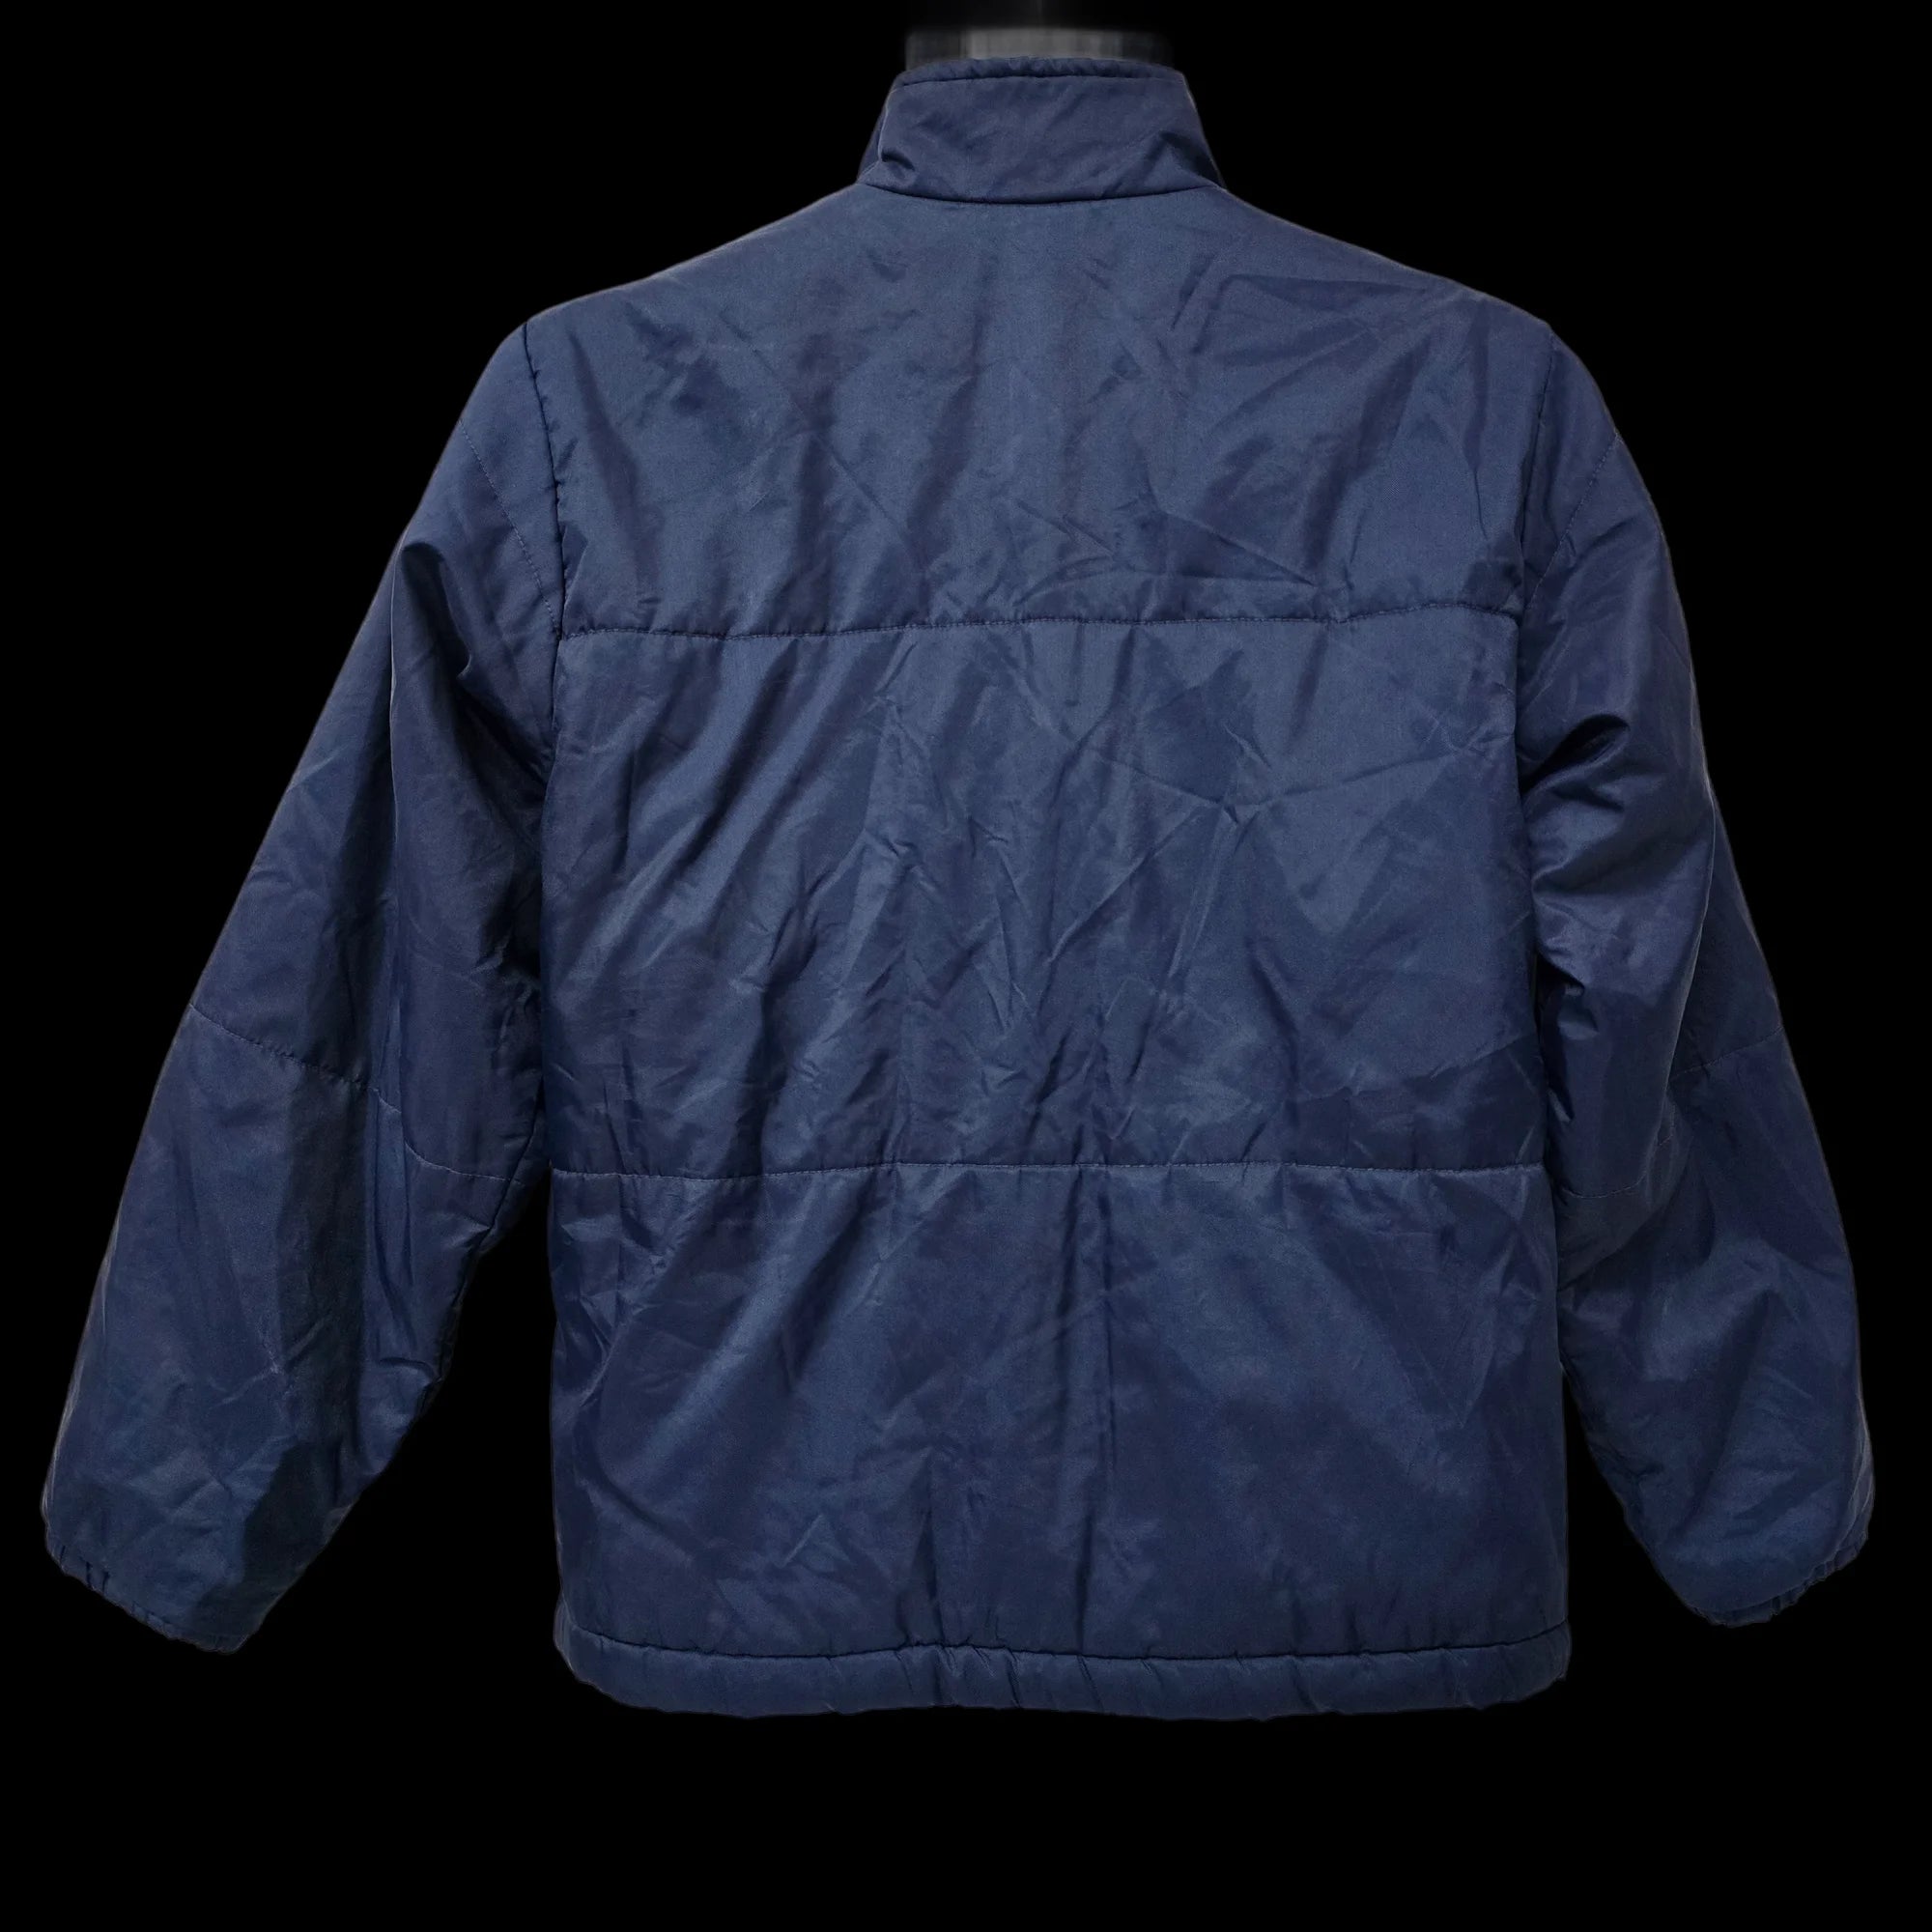 Unisex Nike Blue Bomber Jacket Coat UK Large - 2 - 3465